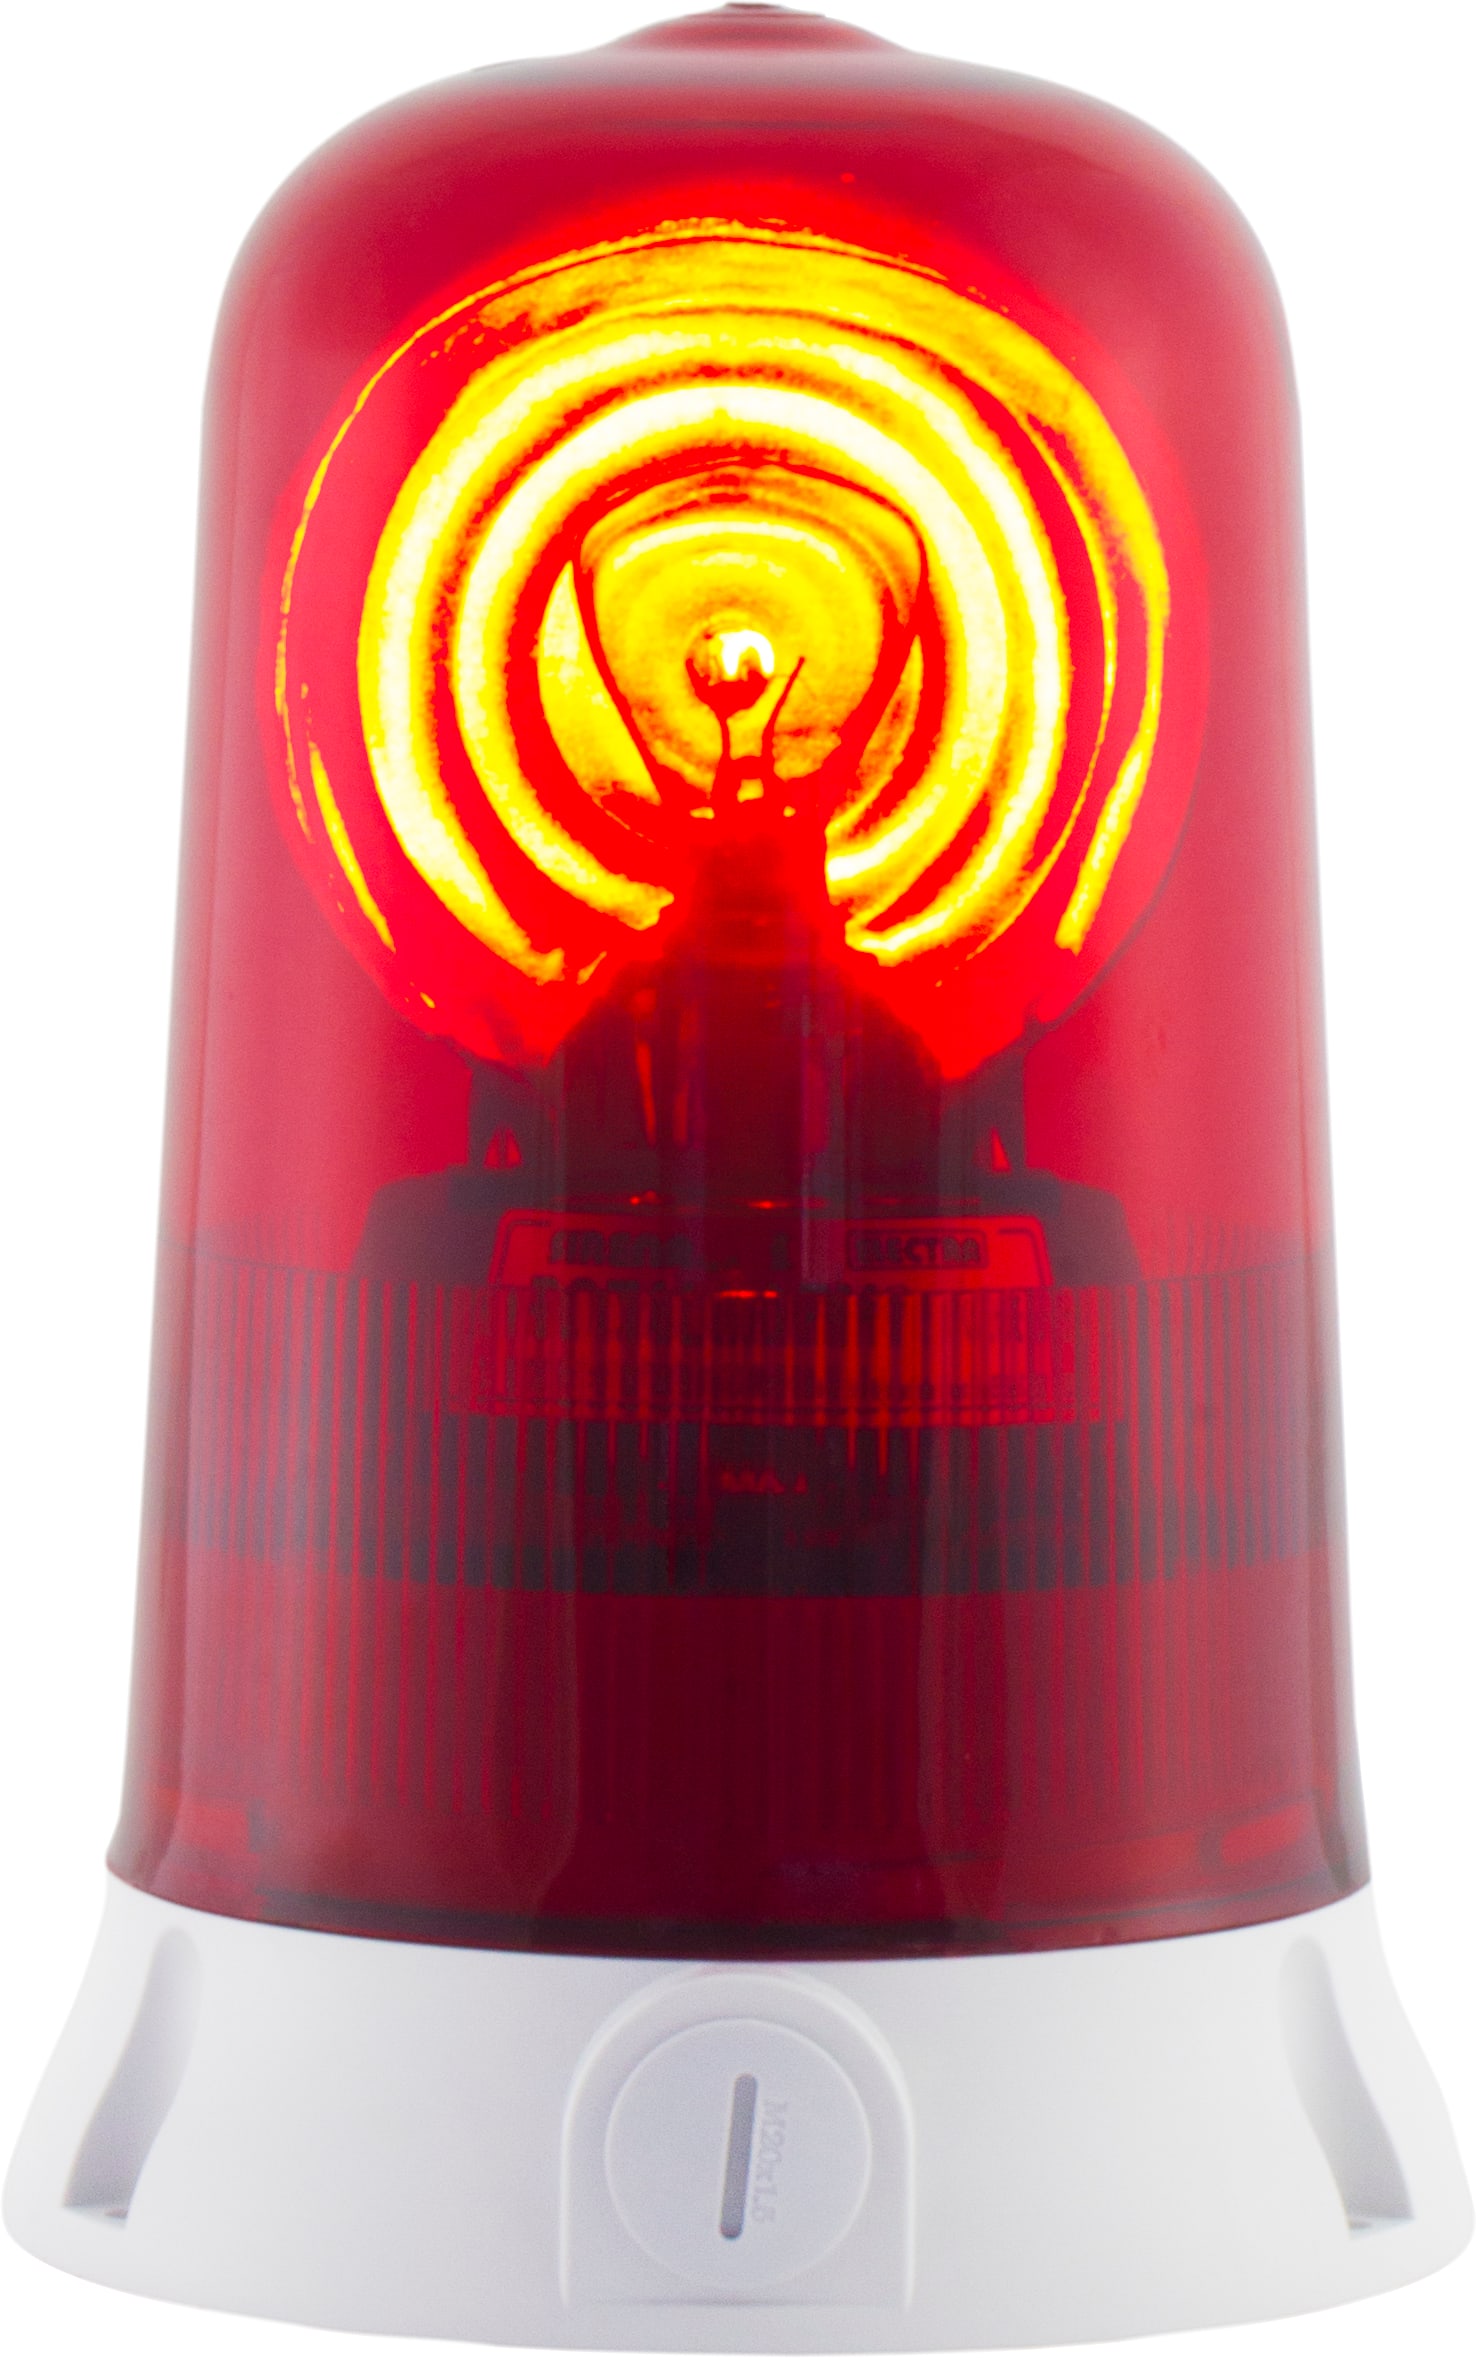 SIRENA - ROTALLARM S H1 feu ampoule halogène lumière tournante IP65 V12ACDC base grise